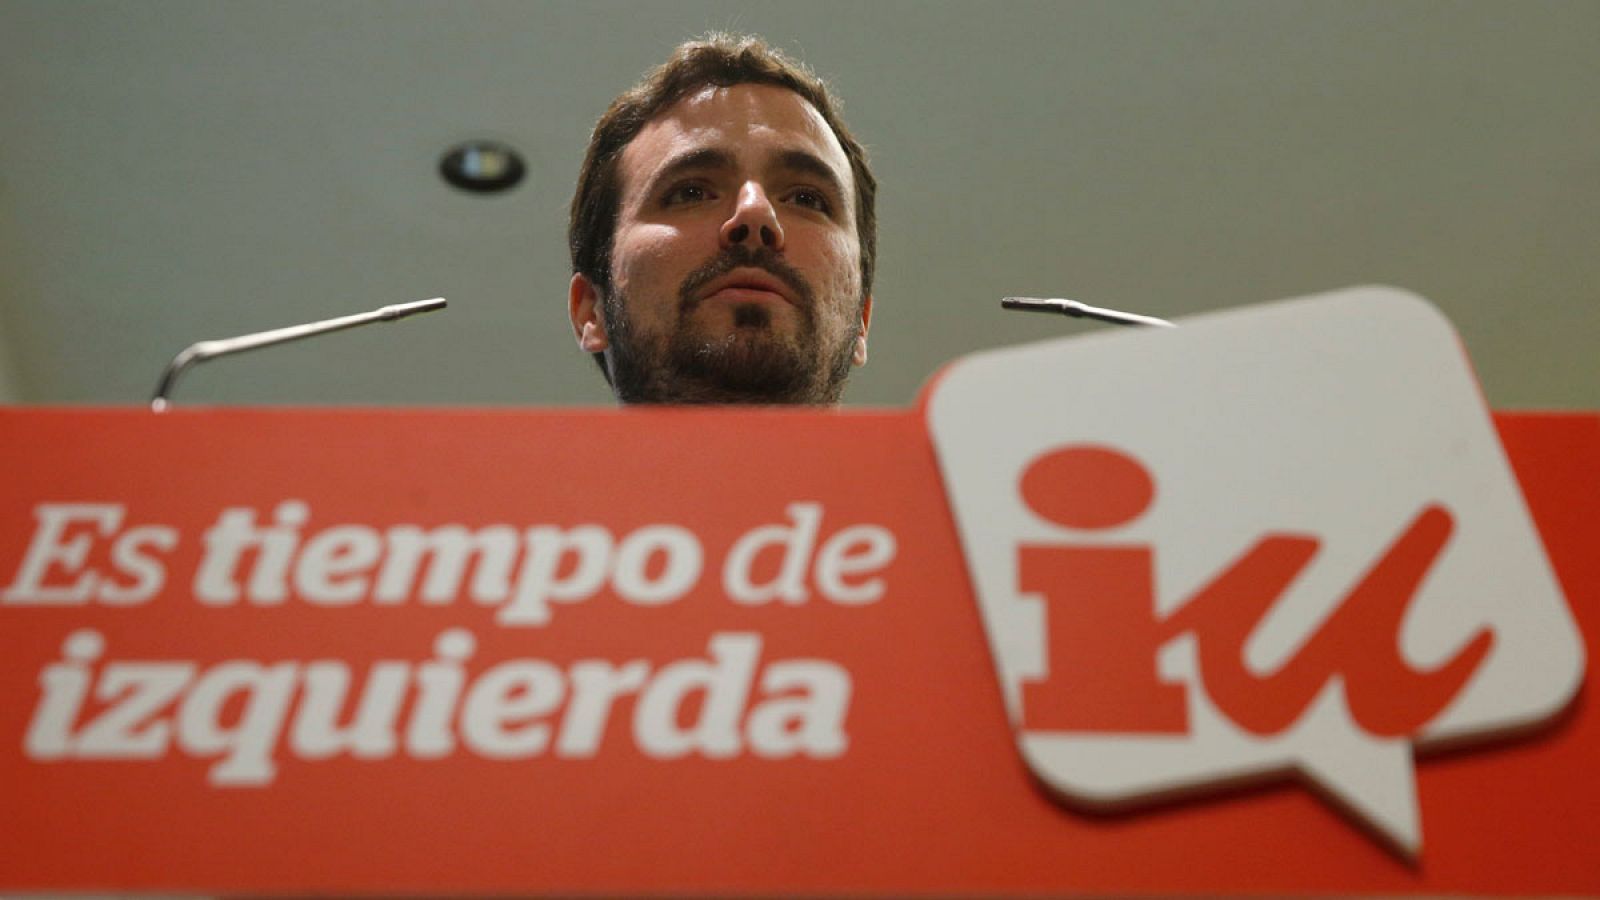 El candidato de IU a las elecciones generales Alberto Garzón en una imagen reciente